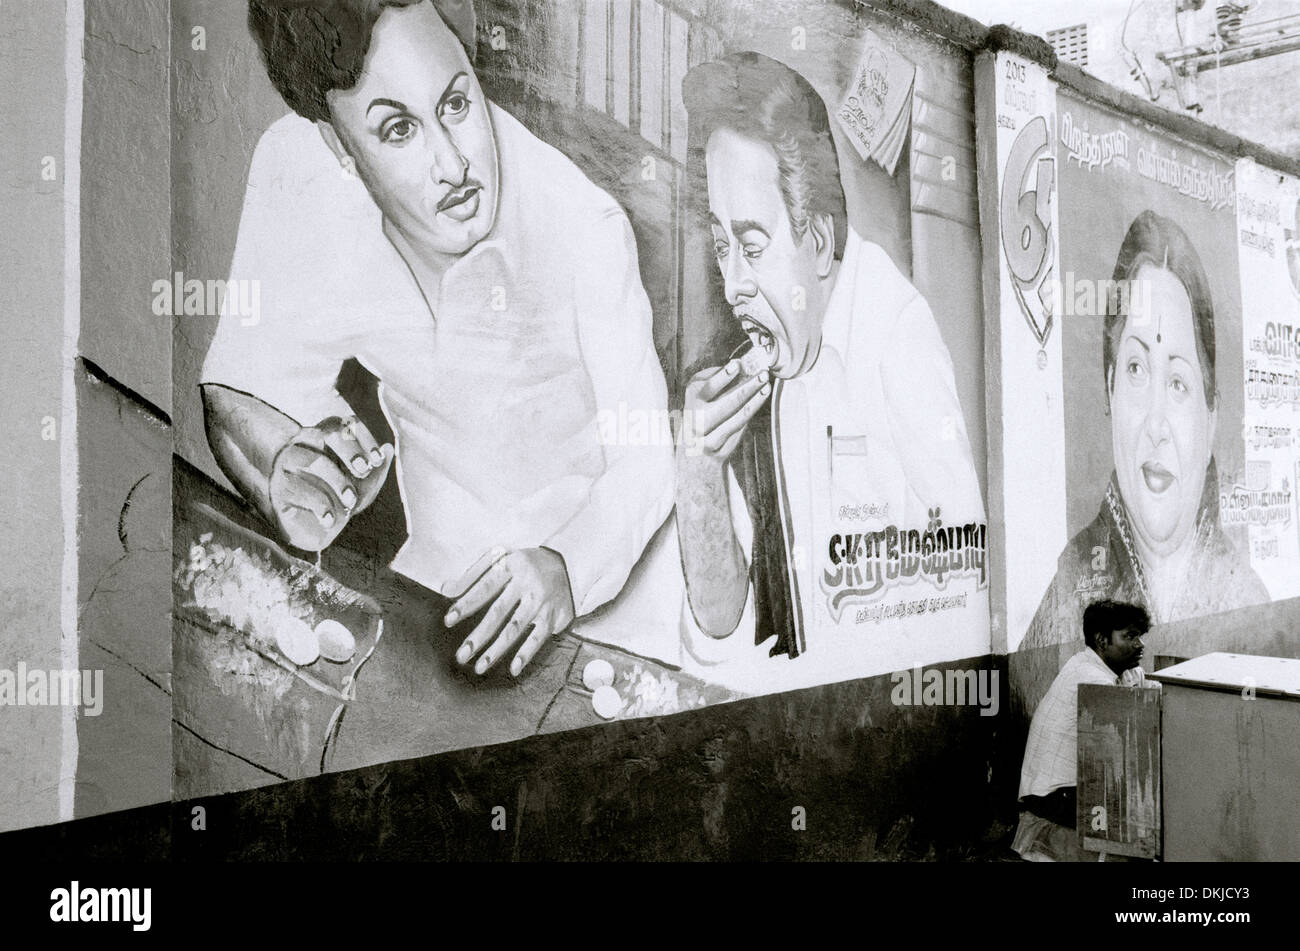 Propaganda Politica a Chennai Madras in Tamil Nadu, nell India orientale in Asia del Sud. Politica Pubblicità Pubblicità Pubblicità politico urbano Travel Foto Stock